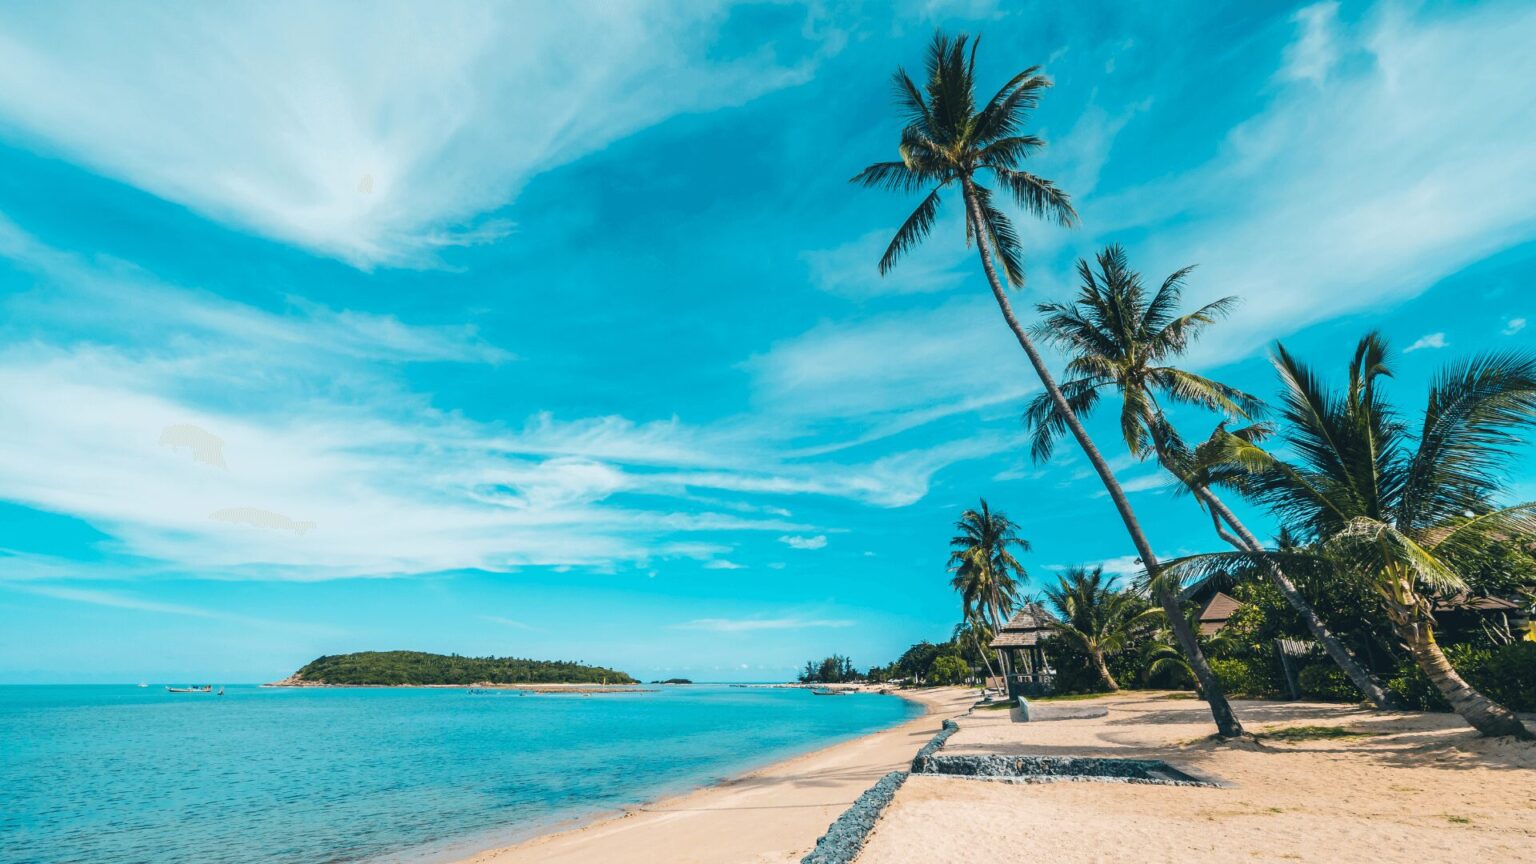 Uma bela praia com palmeiras e um céu azul.